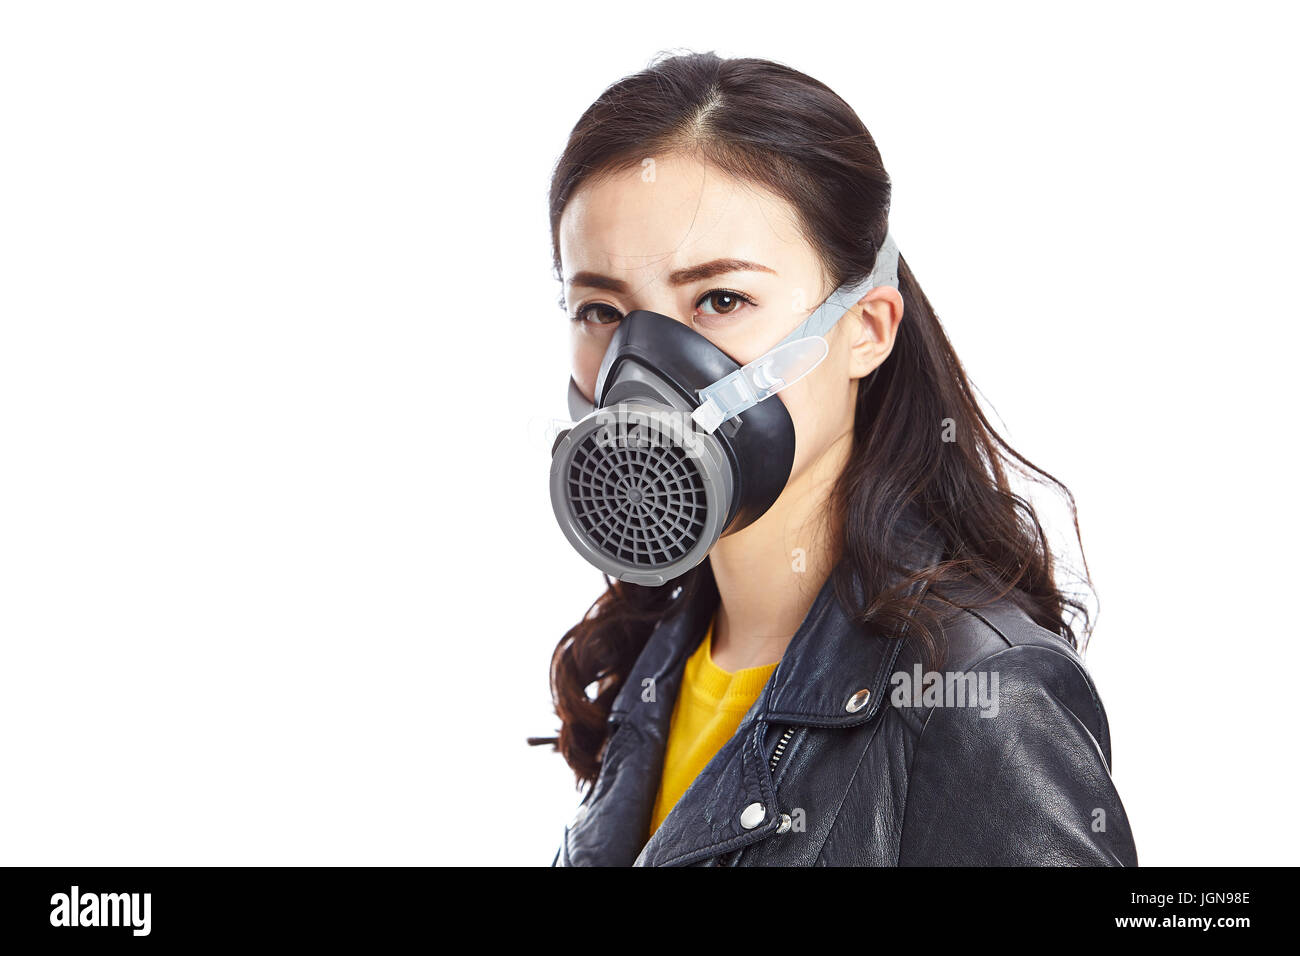 Giovane donna asiatica in pelle nera indossando maschera a gas fissando fotocamera, isolati su sfondo bianco. Foto Stock